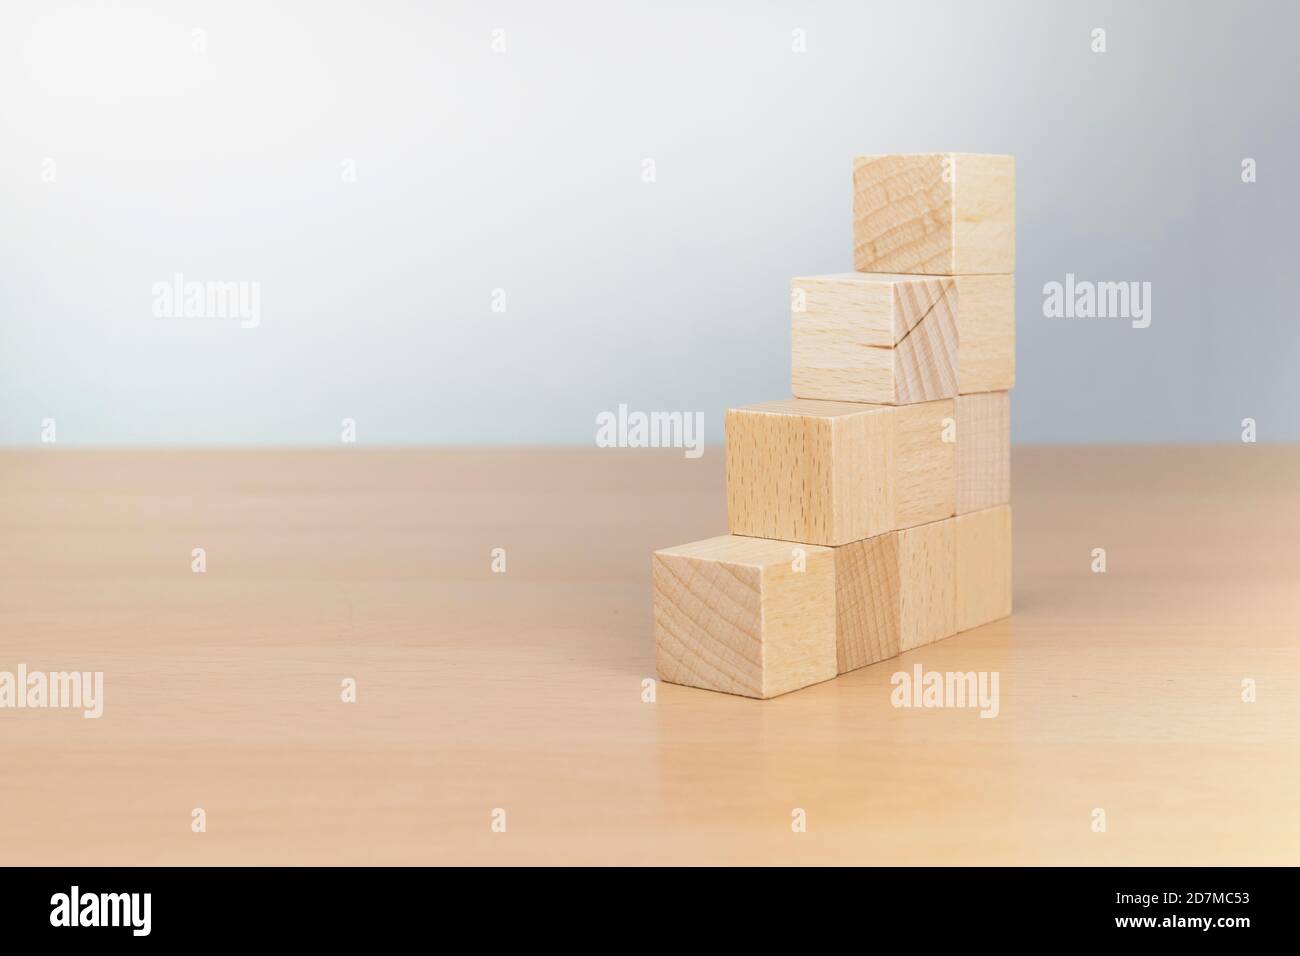 empilage de blocs de bois comme escalier sur table en bois. Concept d'entreprise pour le processus de réussite de la croissance. Copier l'espace Banque D'Images